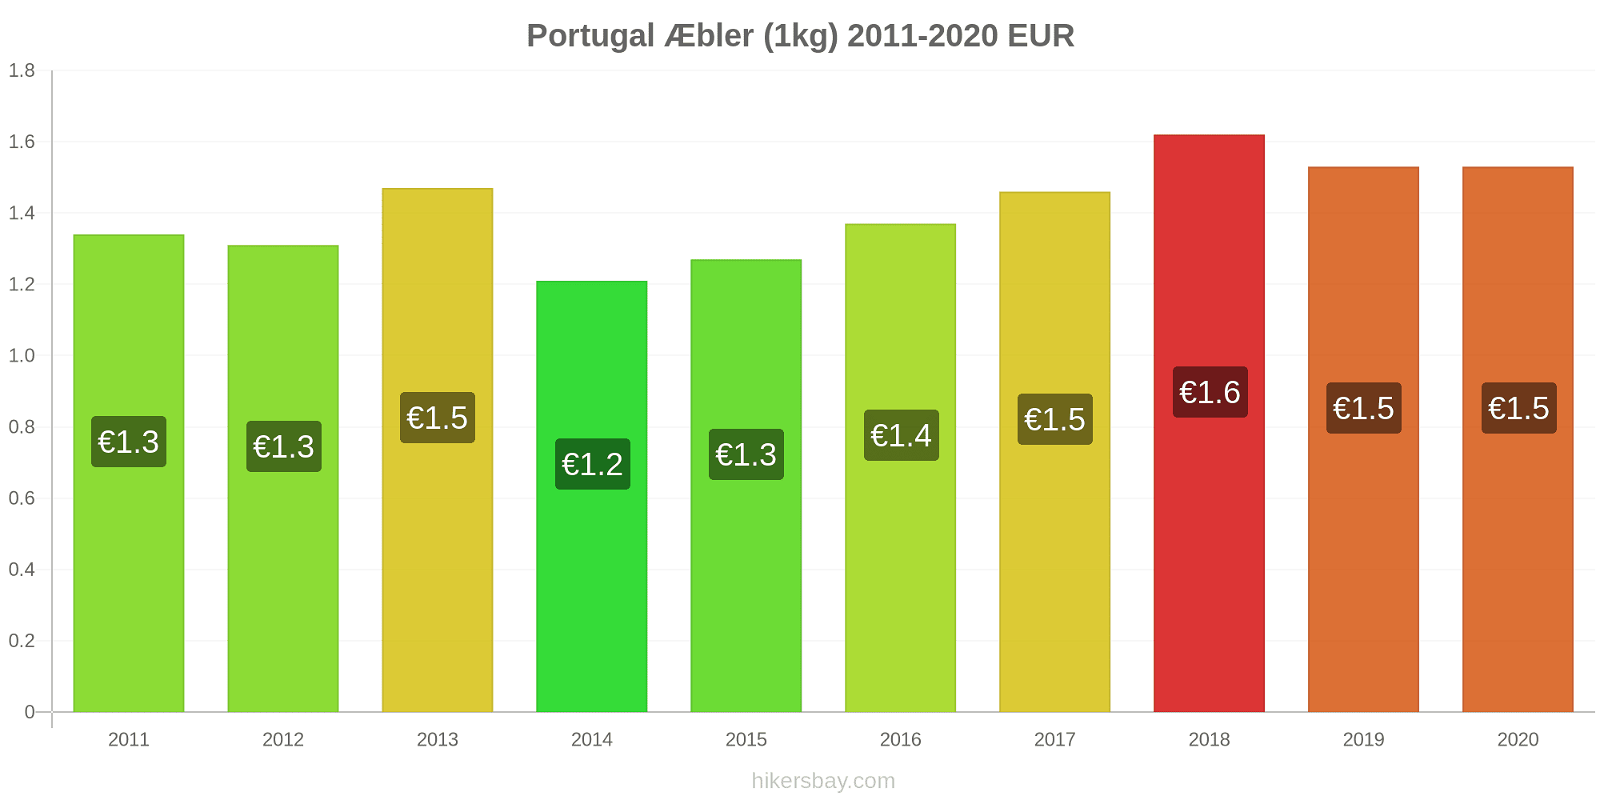 Portugal prisændringer Æbler (1kg) hikersbay.com